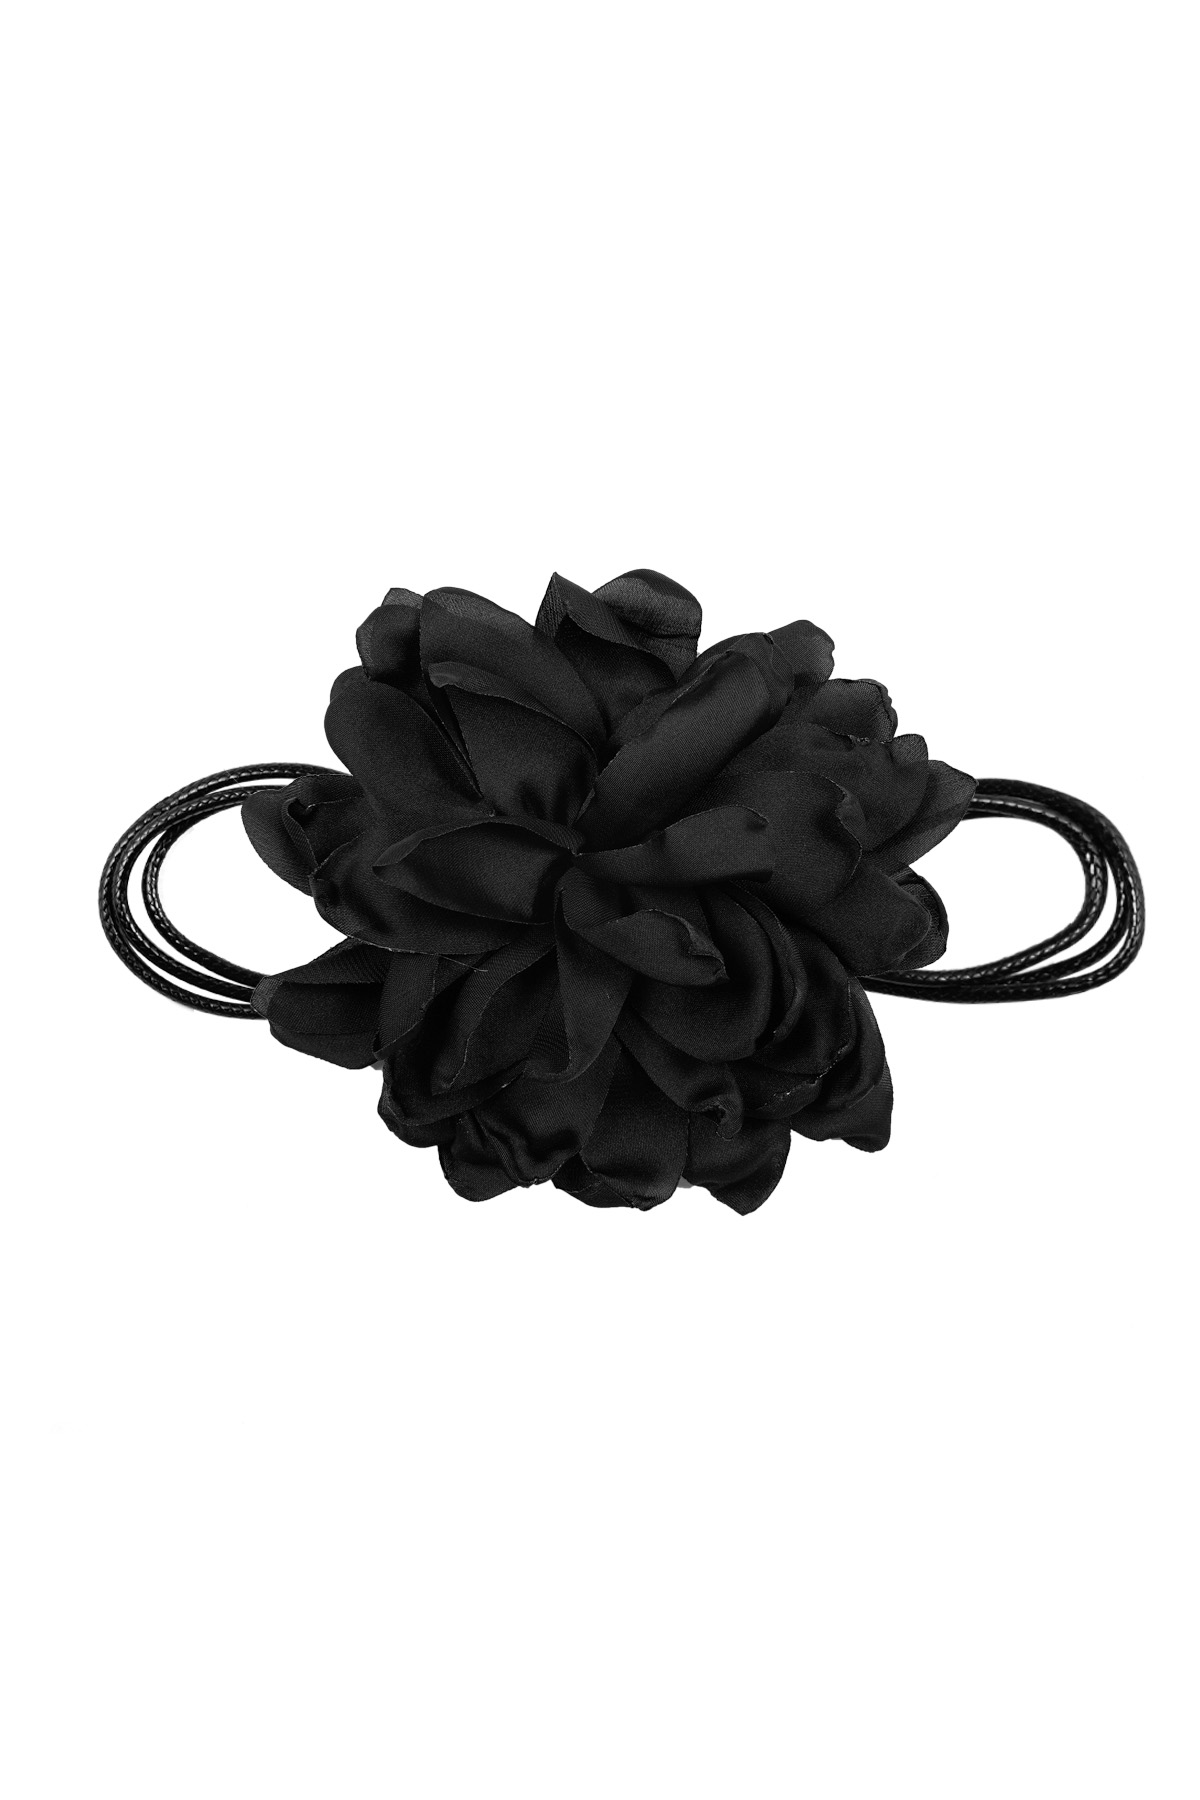 Necklace large flower - black h5 